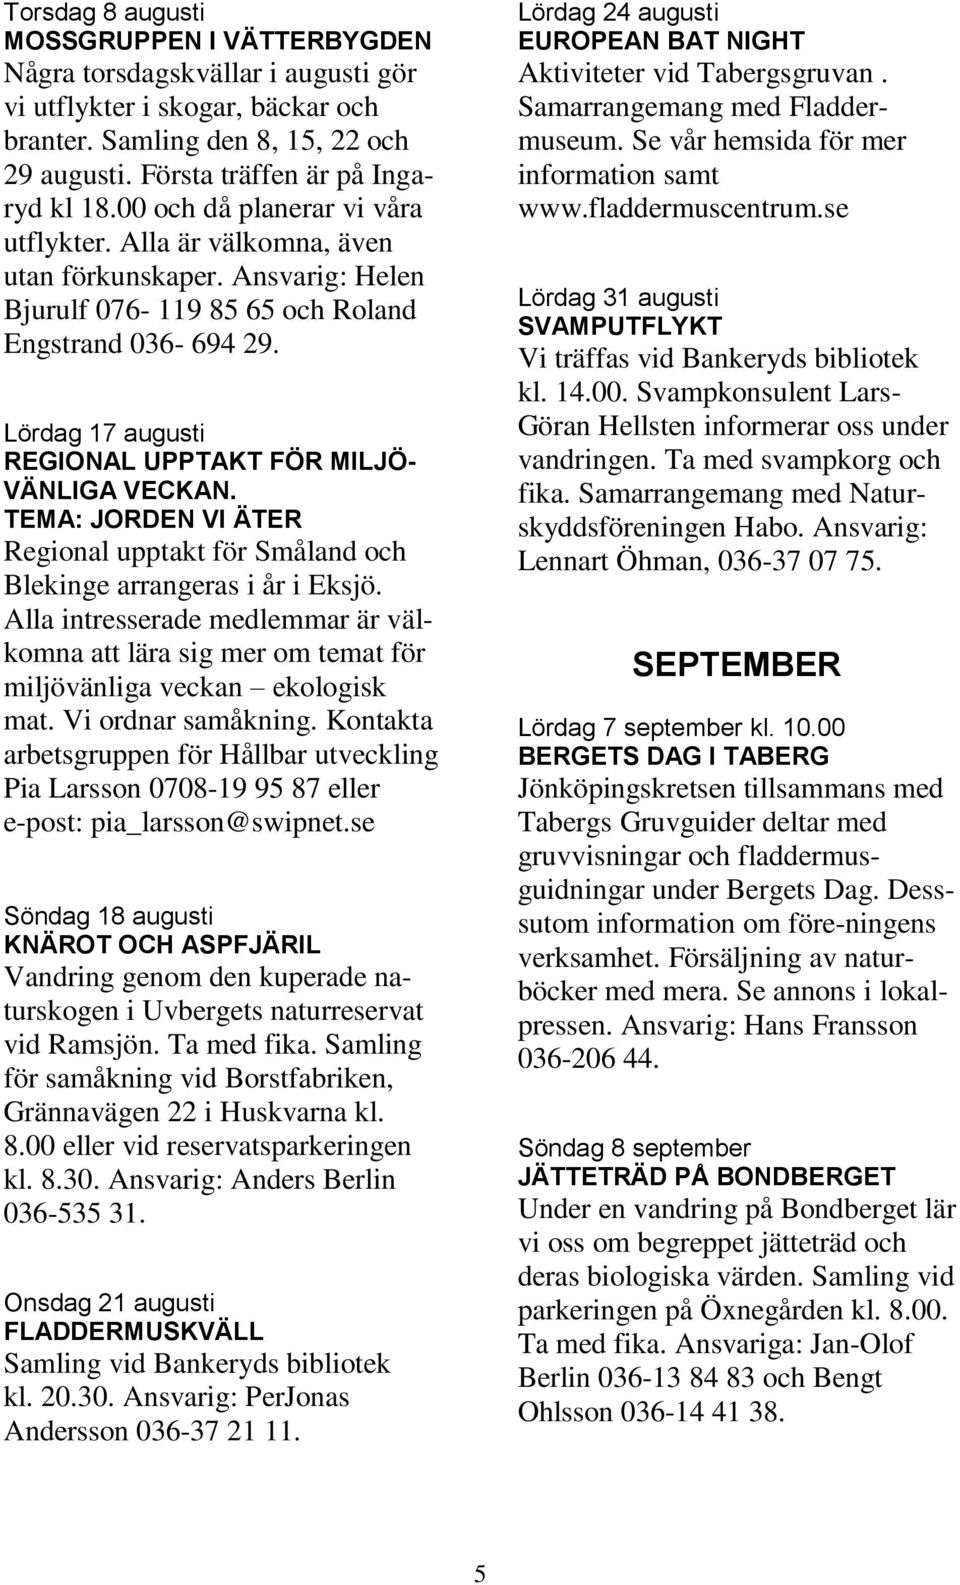 Lördag 17 augusti REGIONAL UPPTAKT FÖR MILJÖ- VÄNLIGA VECKAN. TEMA: JORDEN VI ÄTER Regional upptakt för Småland och Blekinge arrangeras i år i Eksjö.